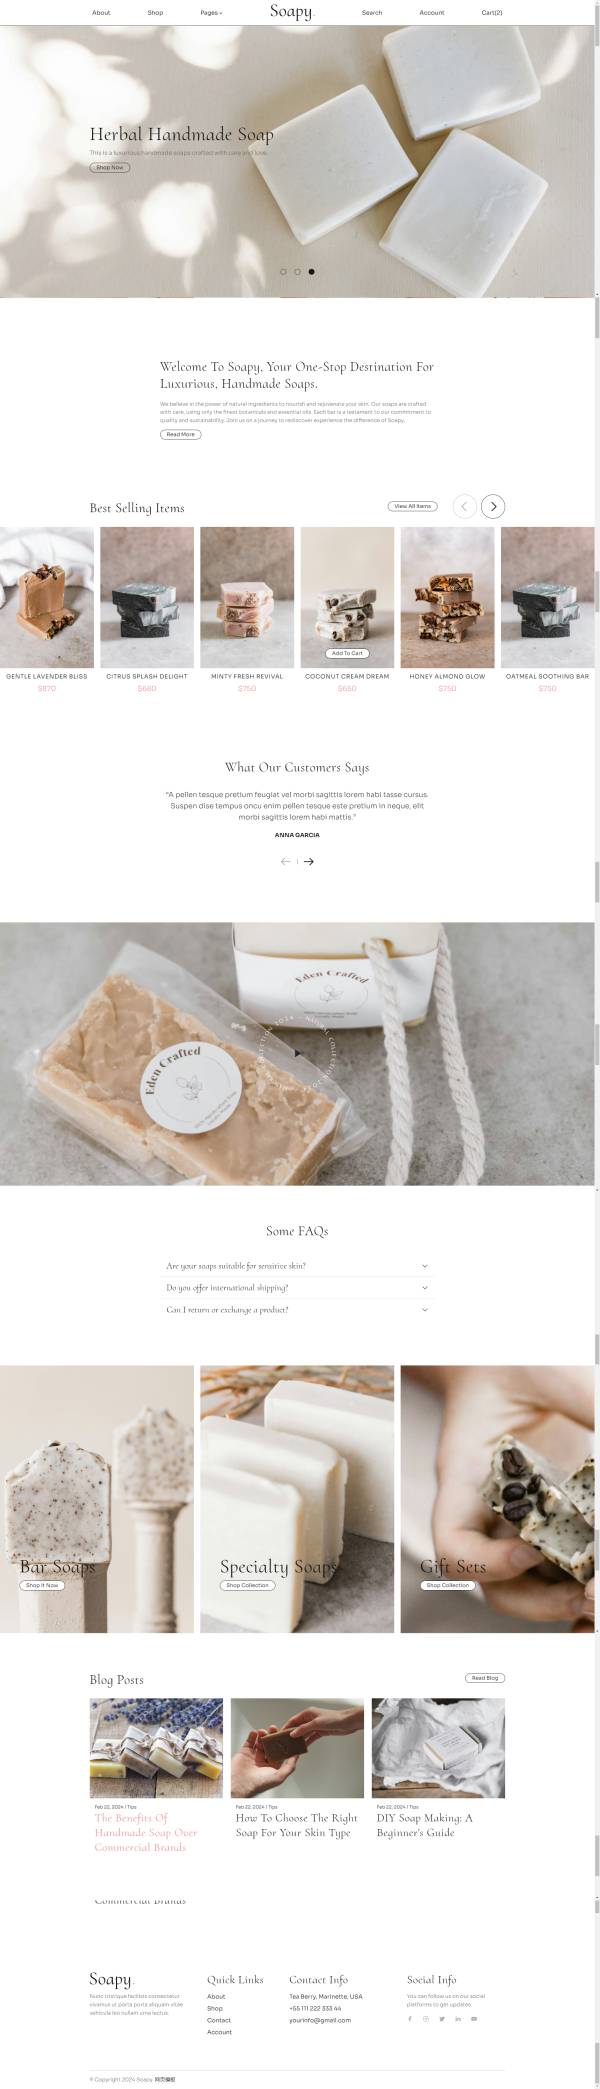 手工香皂产品展示网站开发网页制作模板